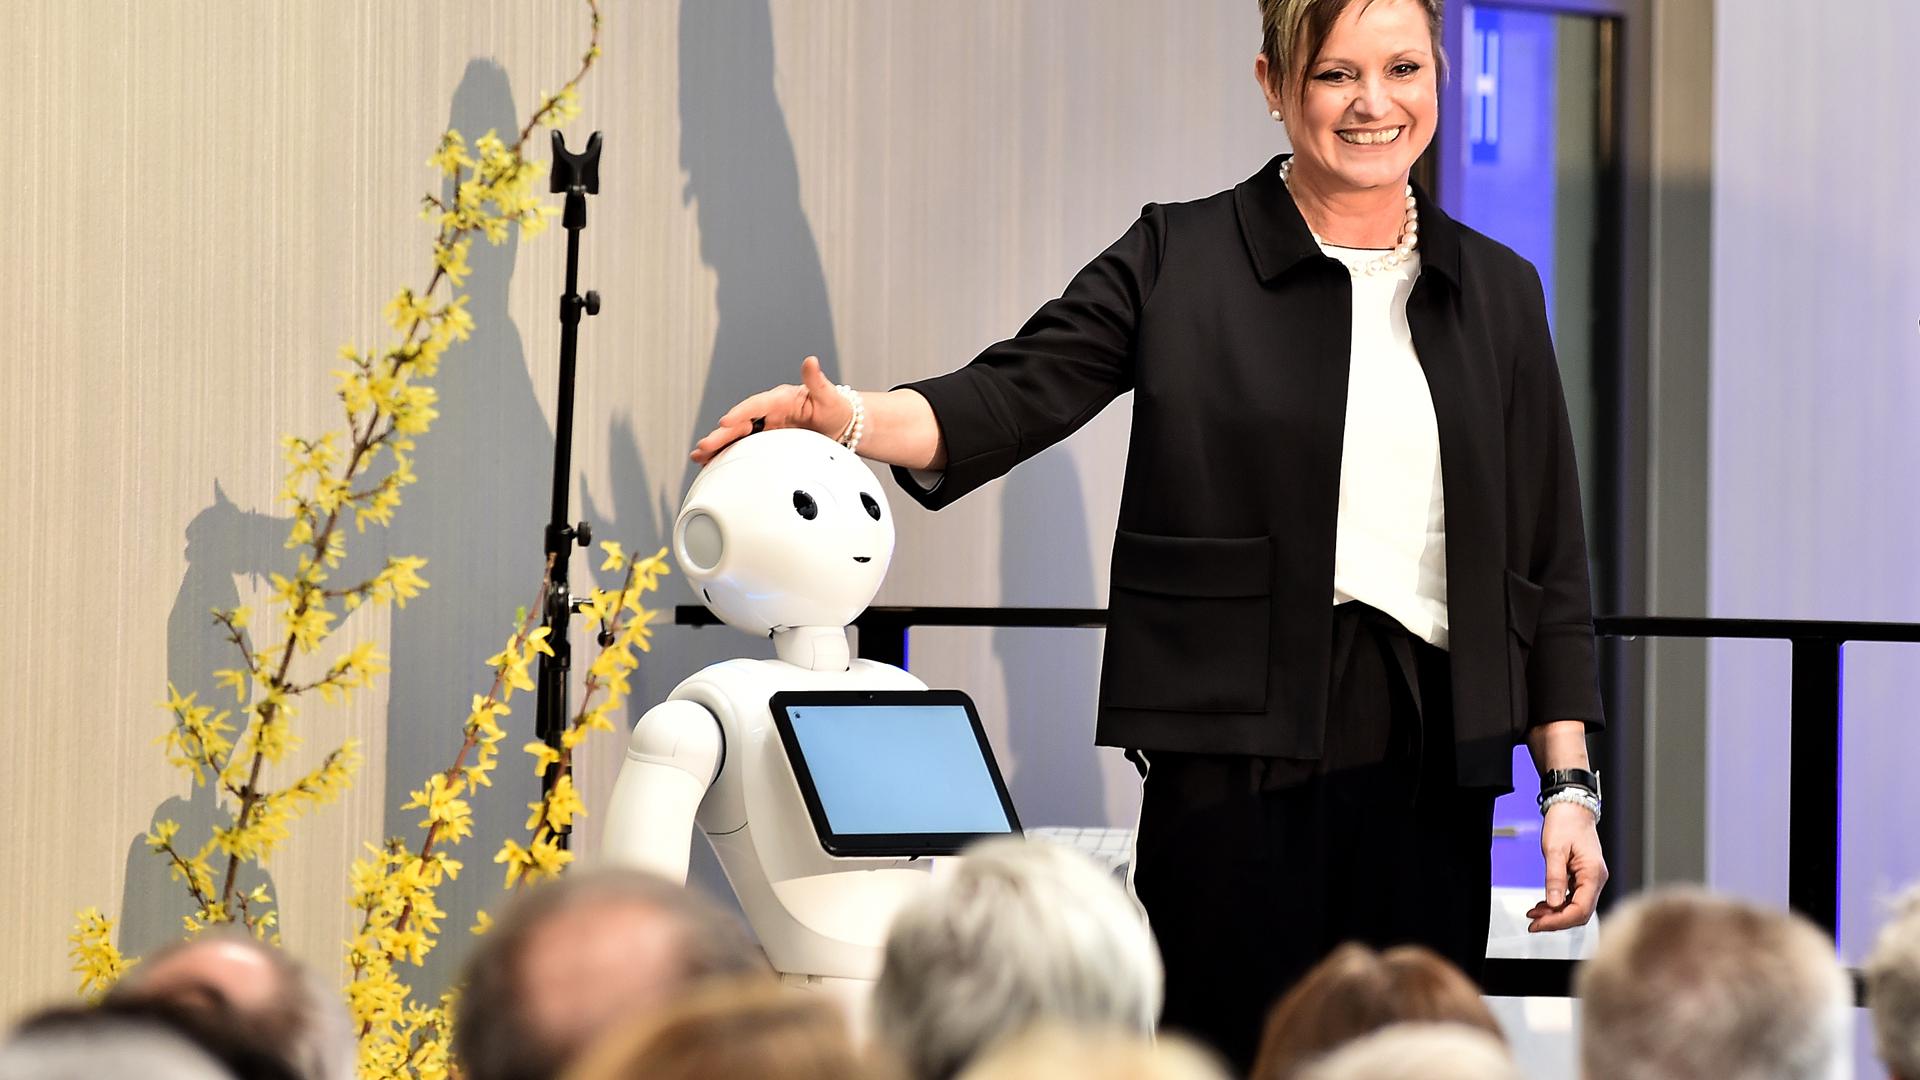 Regionaldirektorin Susanne Jansen versteht sich gut mit "Pepper", dem heimlichen Star der neuen Rechbergklinik. Das humanoide Robotermädchen soll die Patienten unterhalten und informieren.